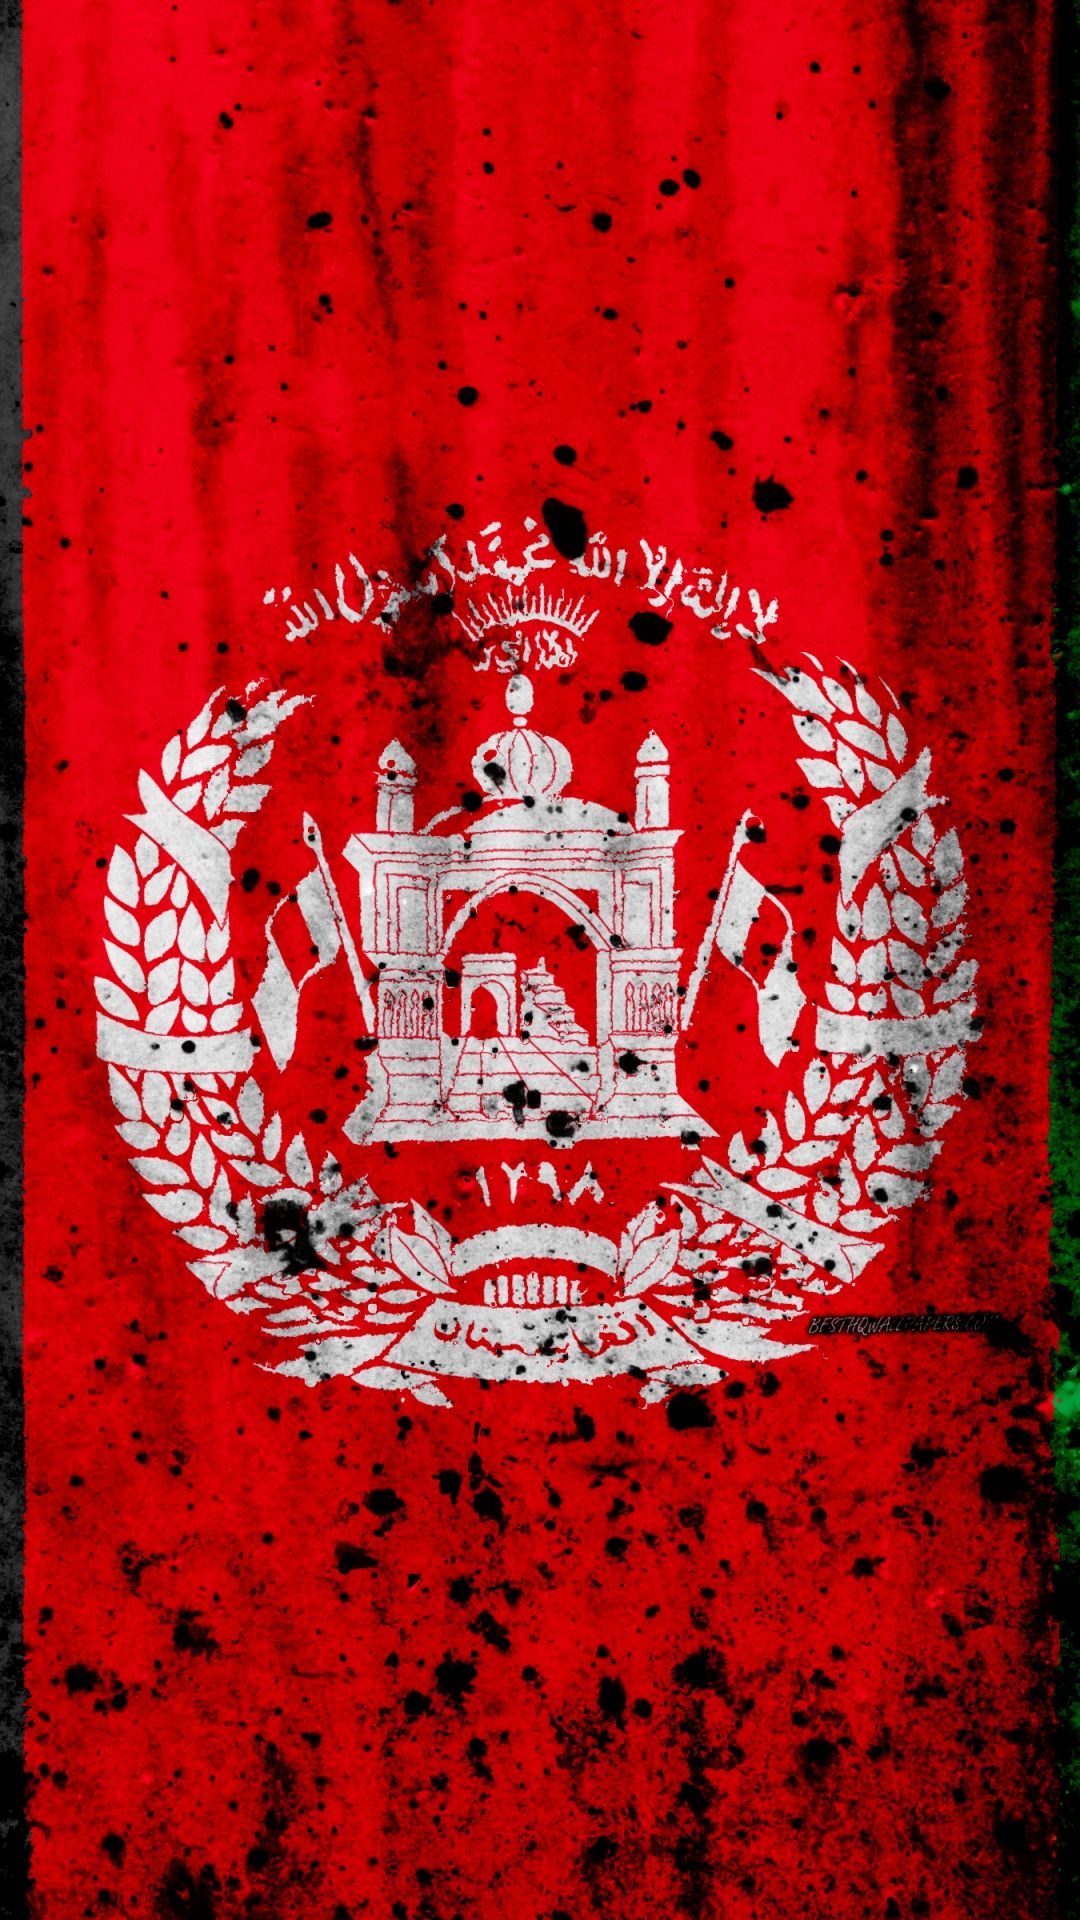 Free download Download wallpaper Afghanistan flag 4k grunge flag